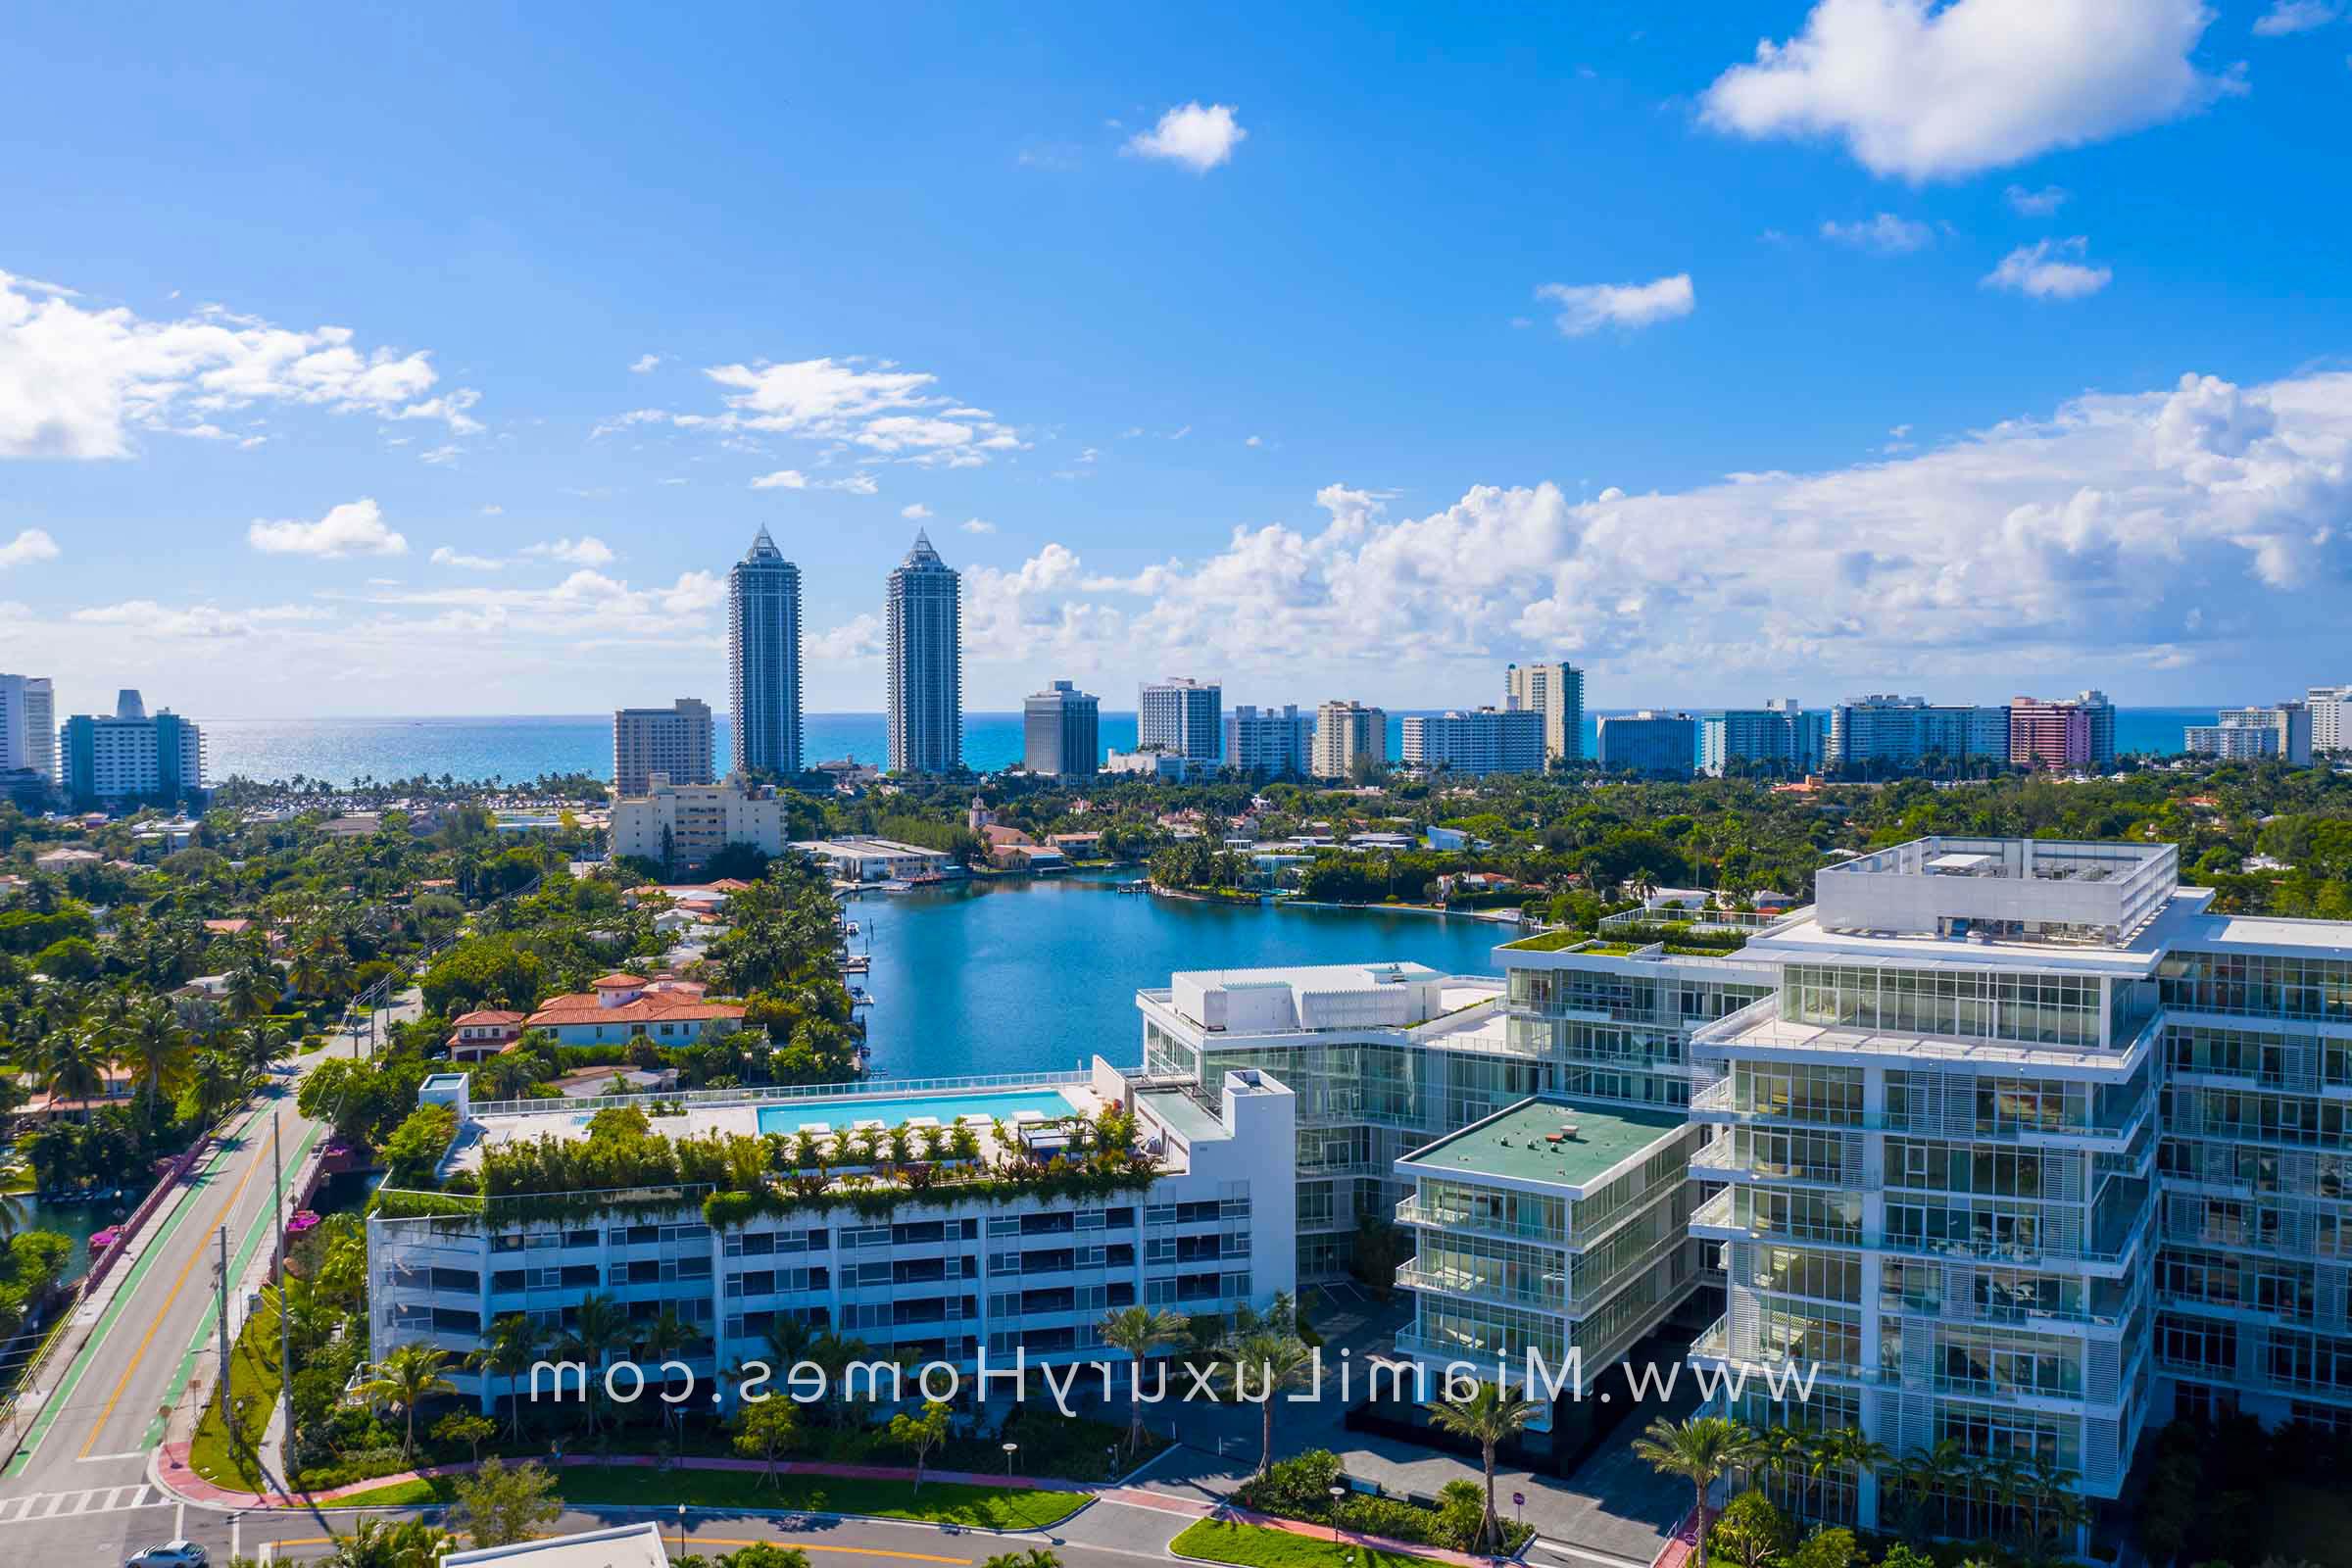 Ritz Carlton Condos Miami Beach